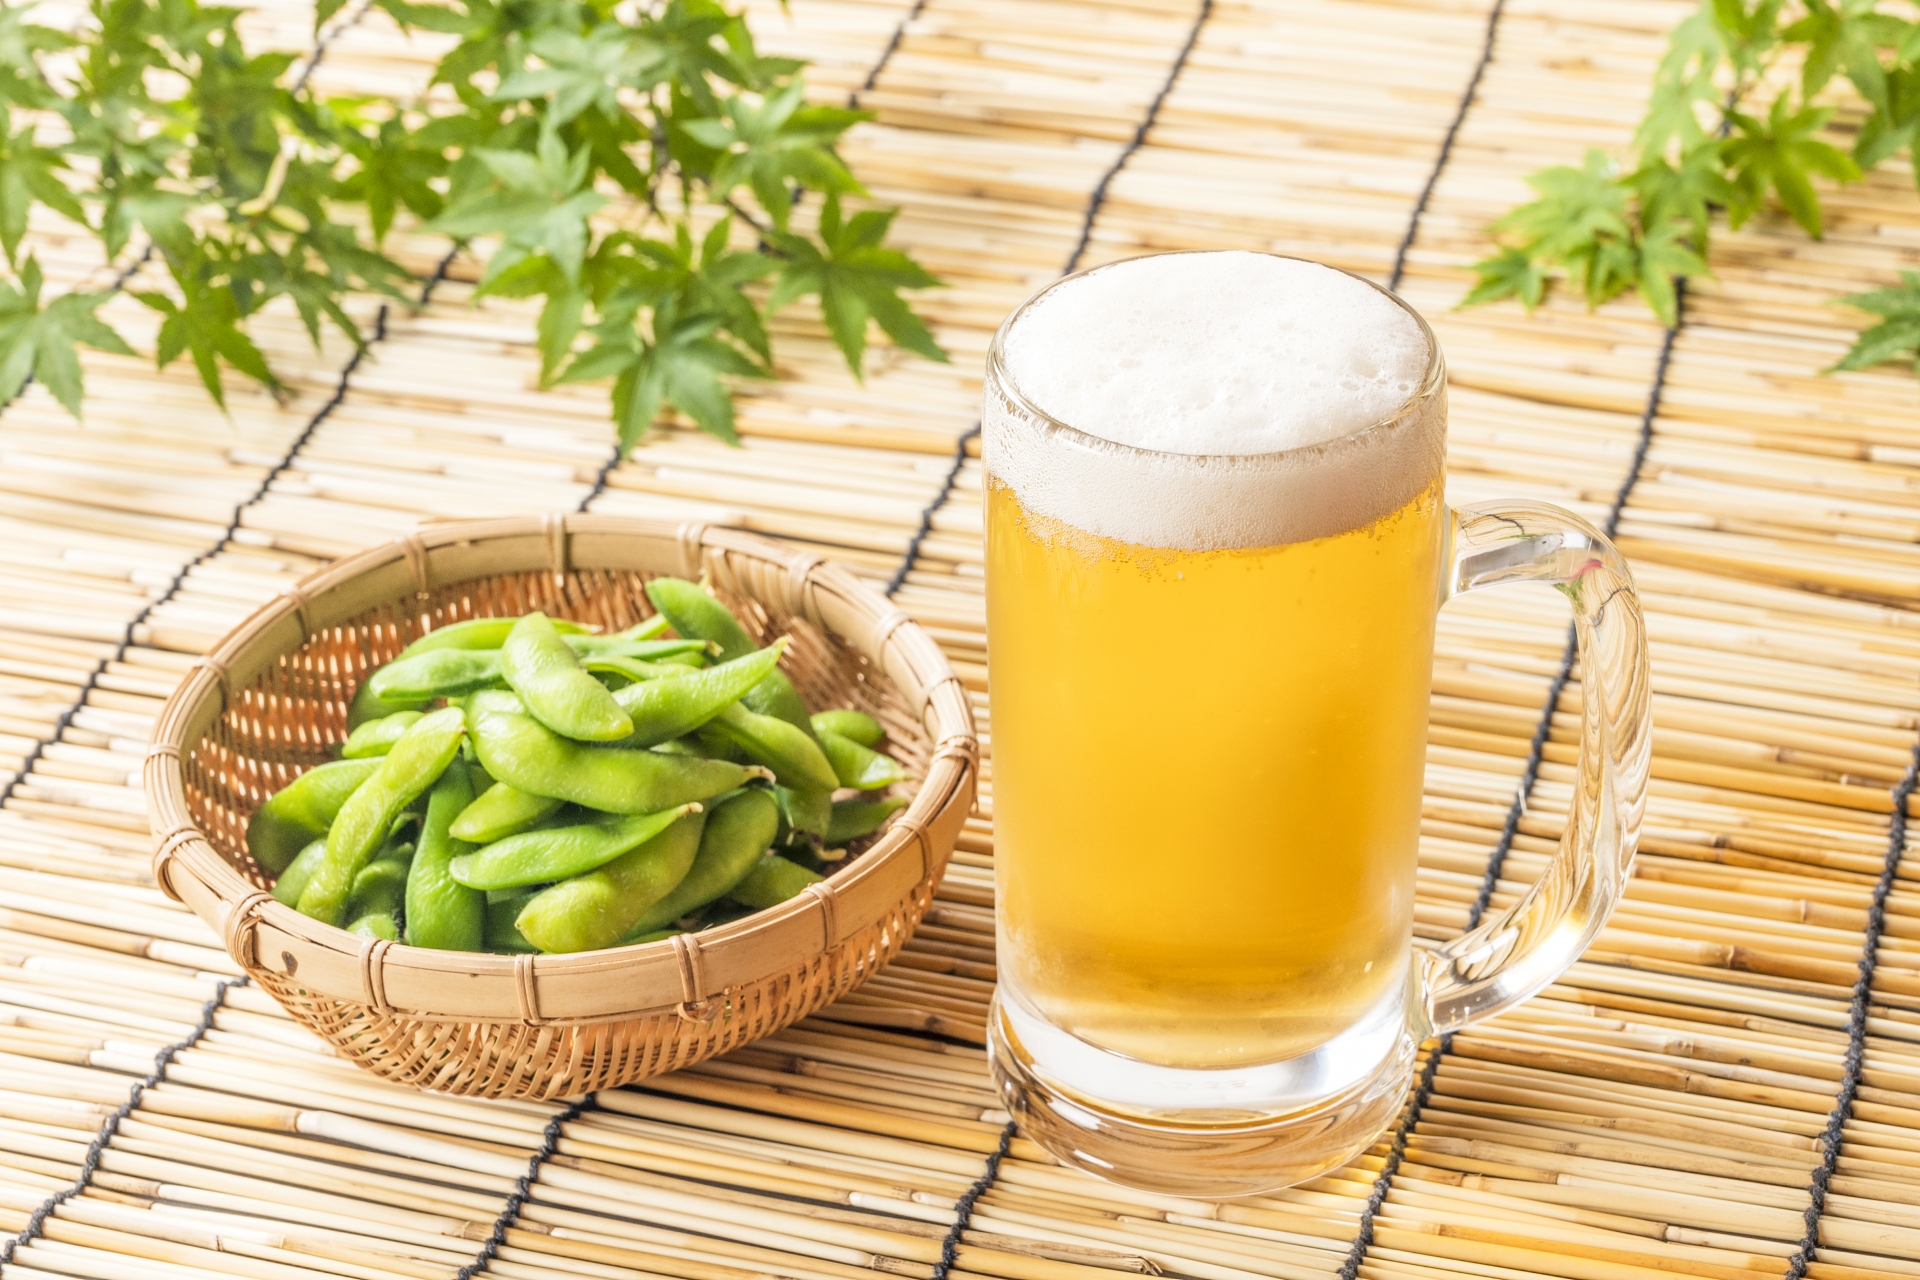 ビールなどの冷たい飲み物や食べ物がかえって夏バテを引き起こします